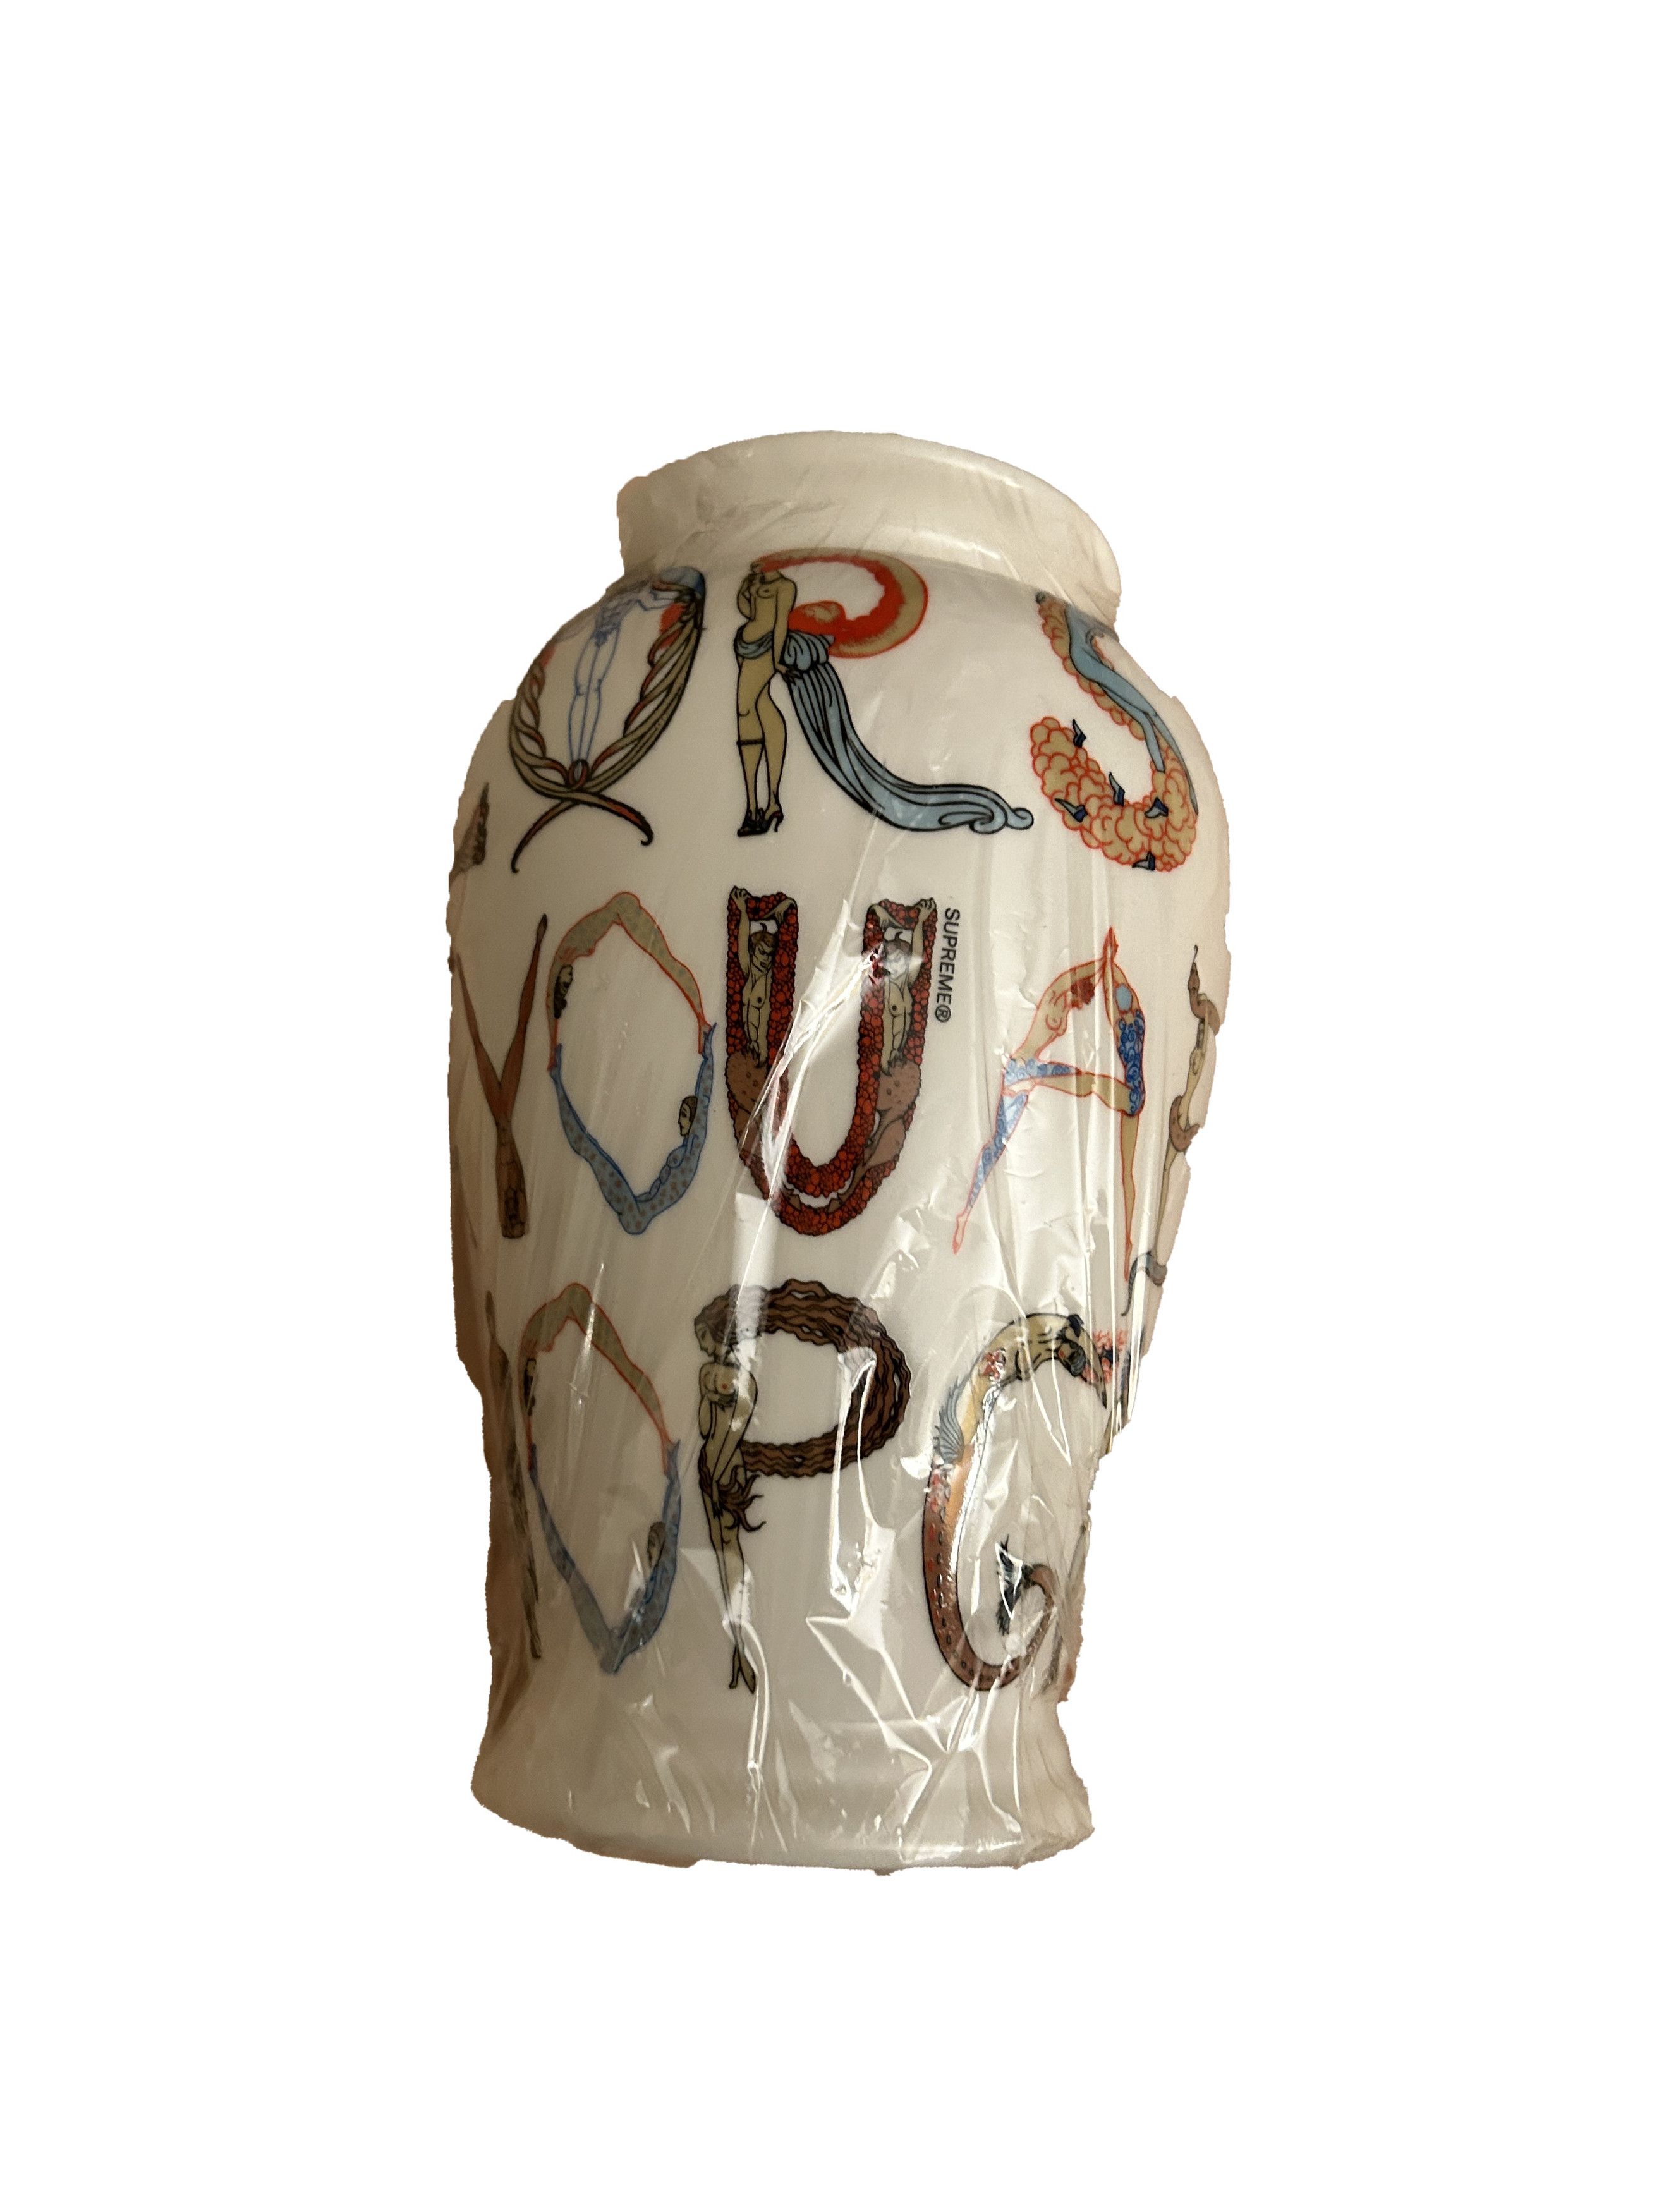 Supreme Supreme alphabet vase s/s 18 White | Grailed